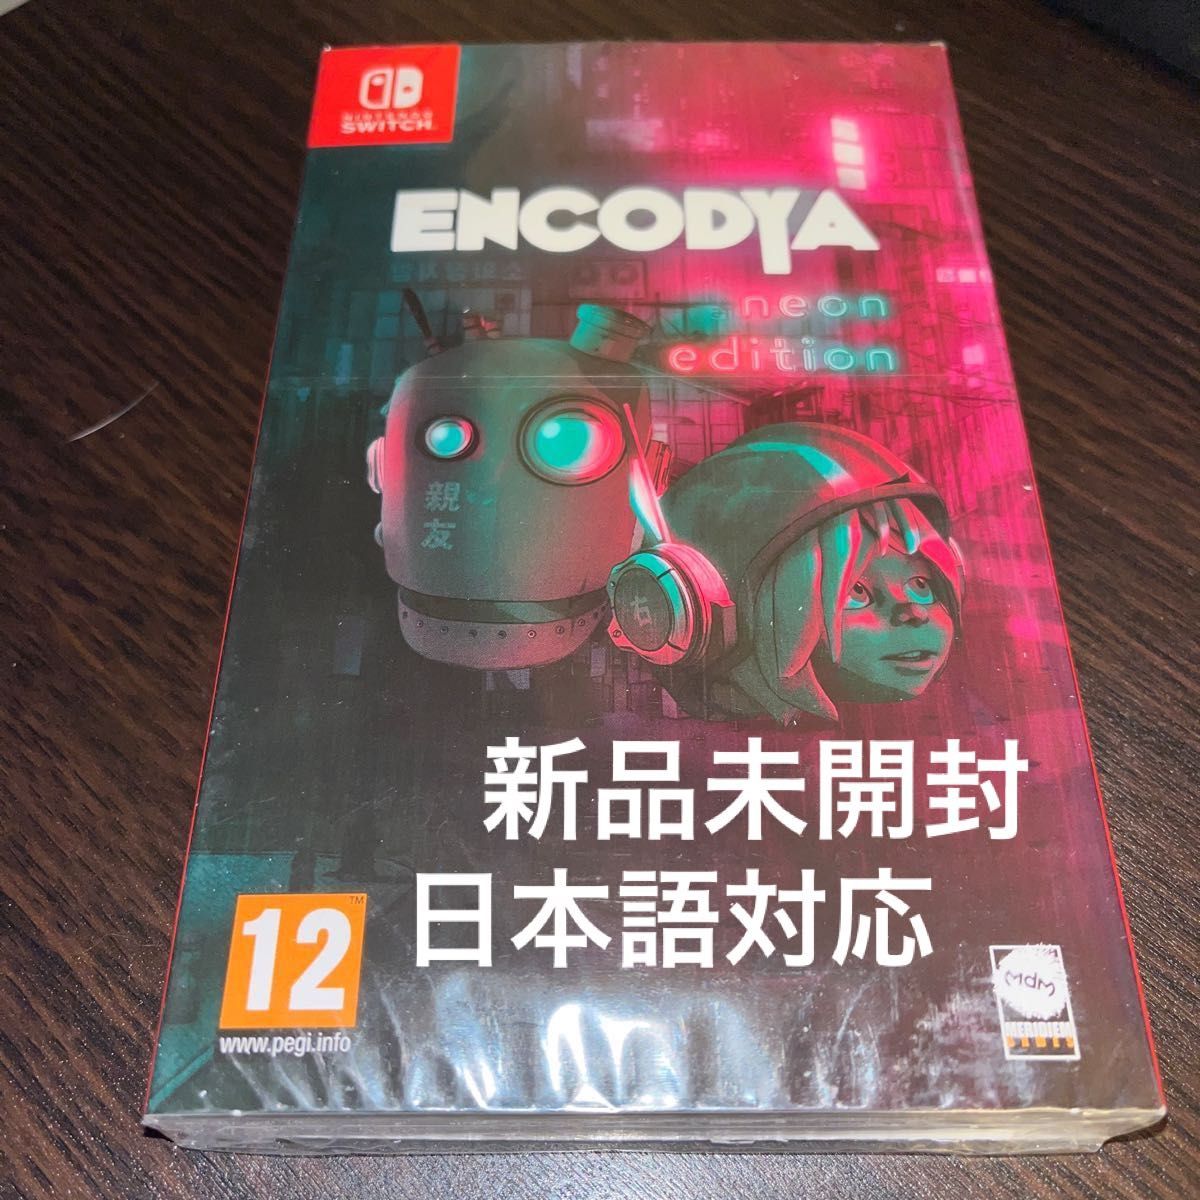 Encodya switch ソフト★新品未開封★欧州版